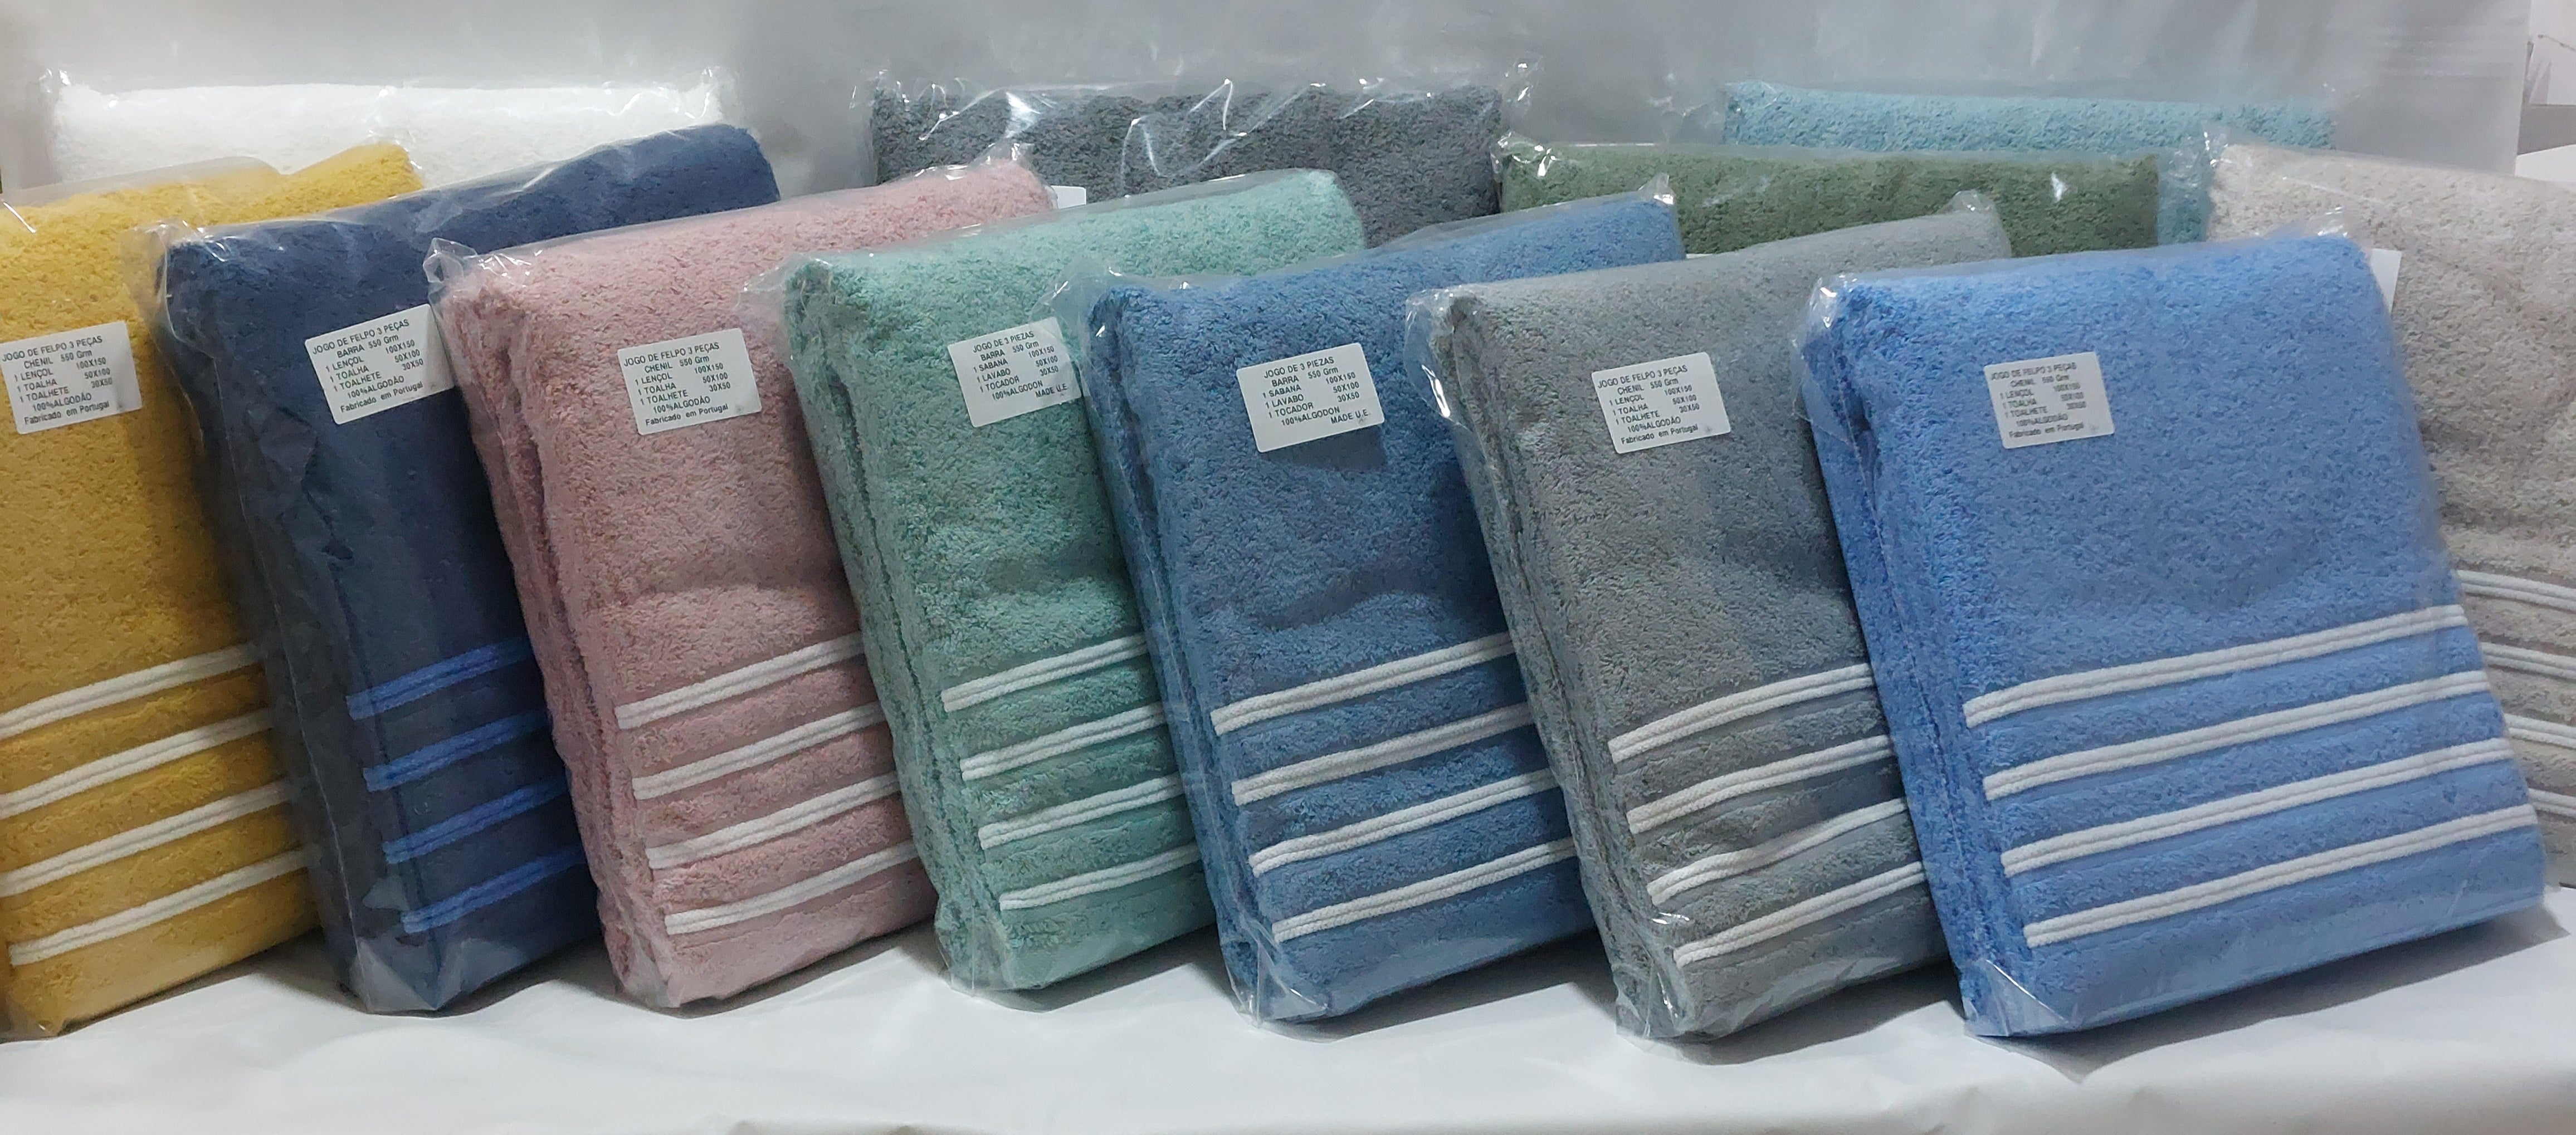 Rams - Pack de 2 toallas de baño realizadas 100% algodón, de color